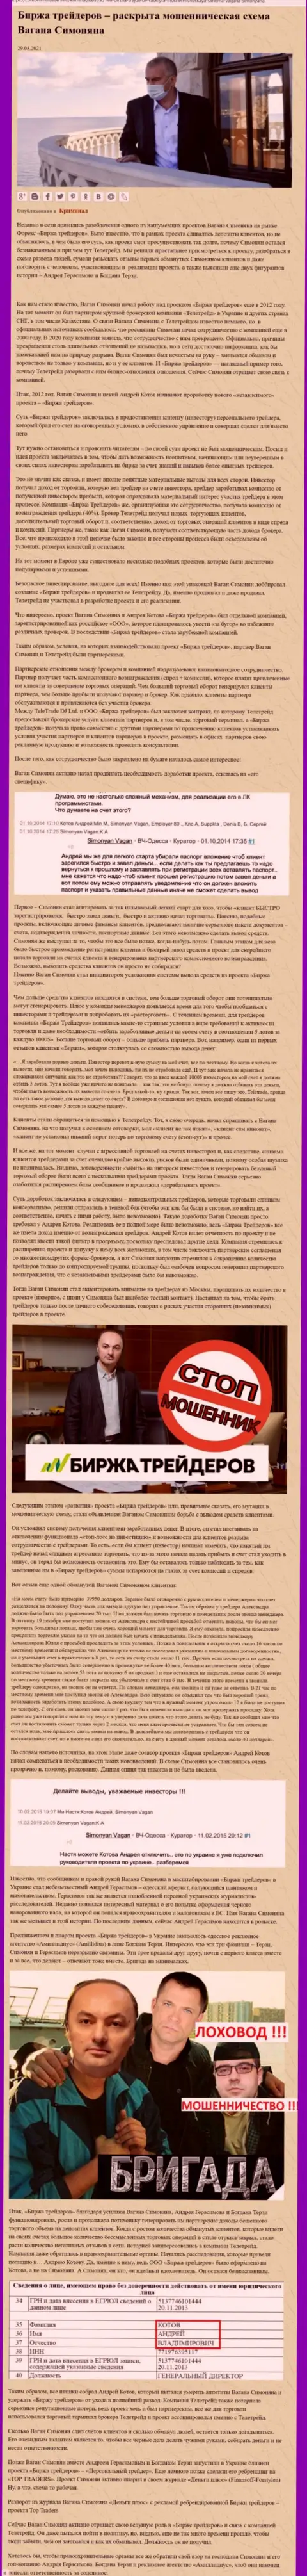 Продвижением организации Биржа Трейдеров, тесно связанной с мошенниками ТелеТрейд, тоже был занят Терзи Богдан Михайлович